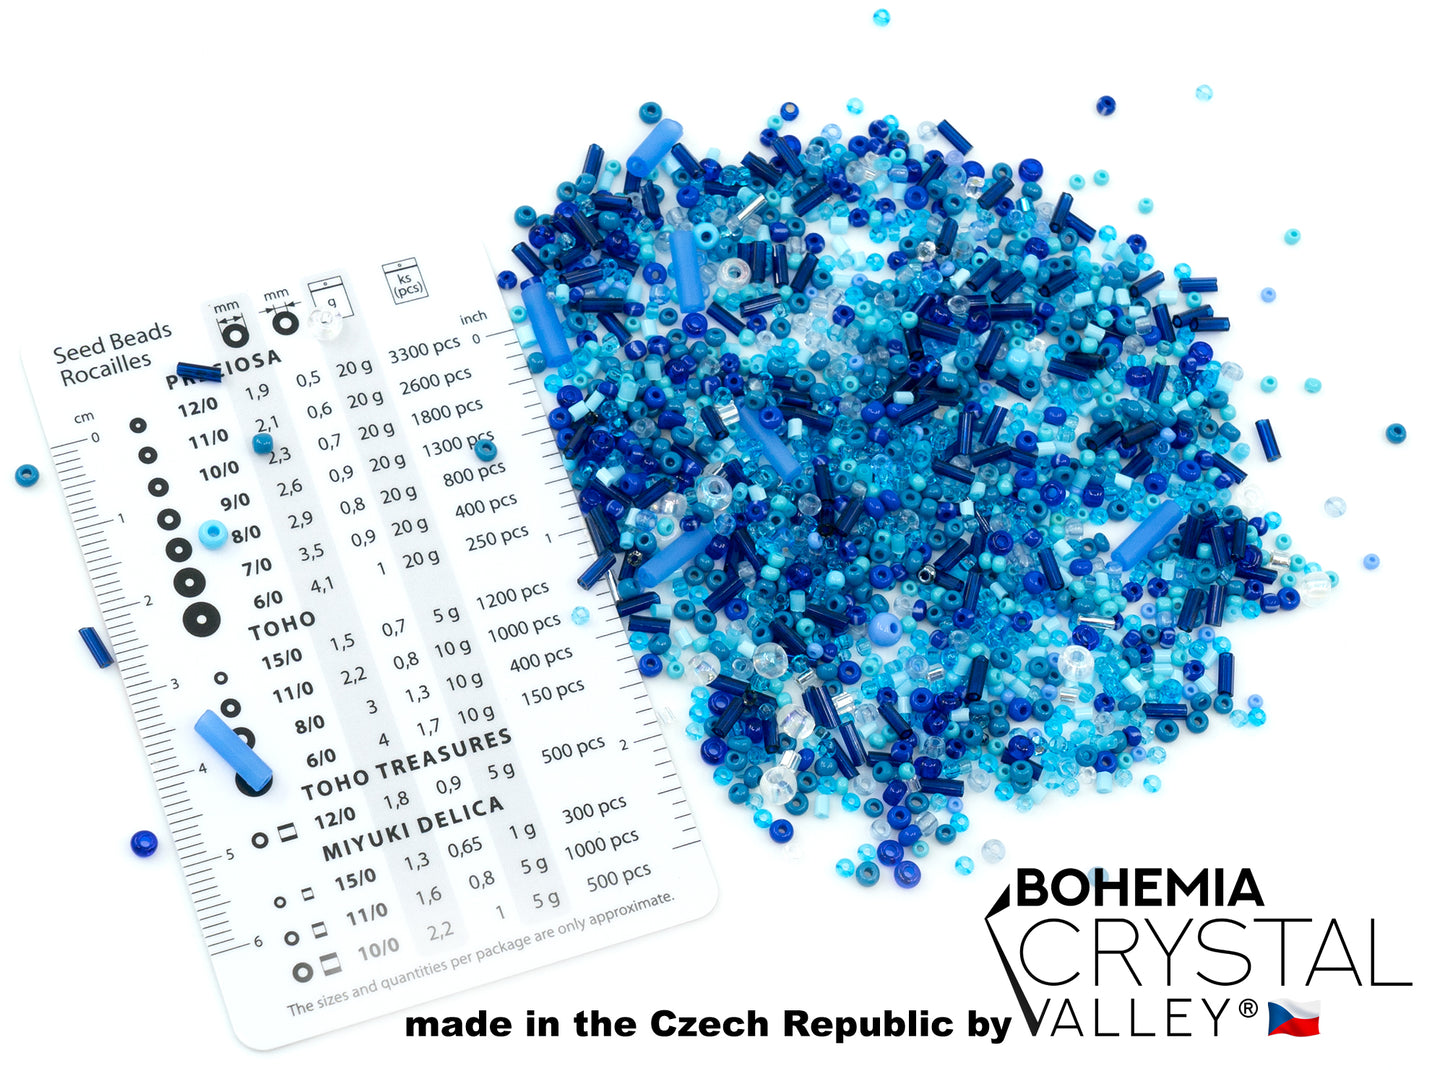 小 Rocailles、种子珠和号角 2-10 毫米 Preciosa Ornela 捷克玻璃珠（20 克），混合蓝色